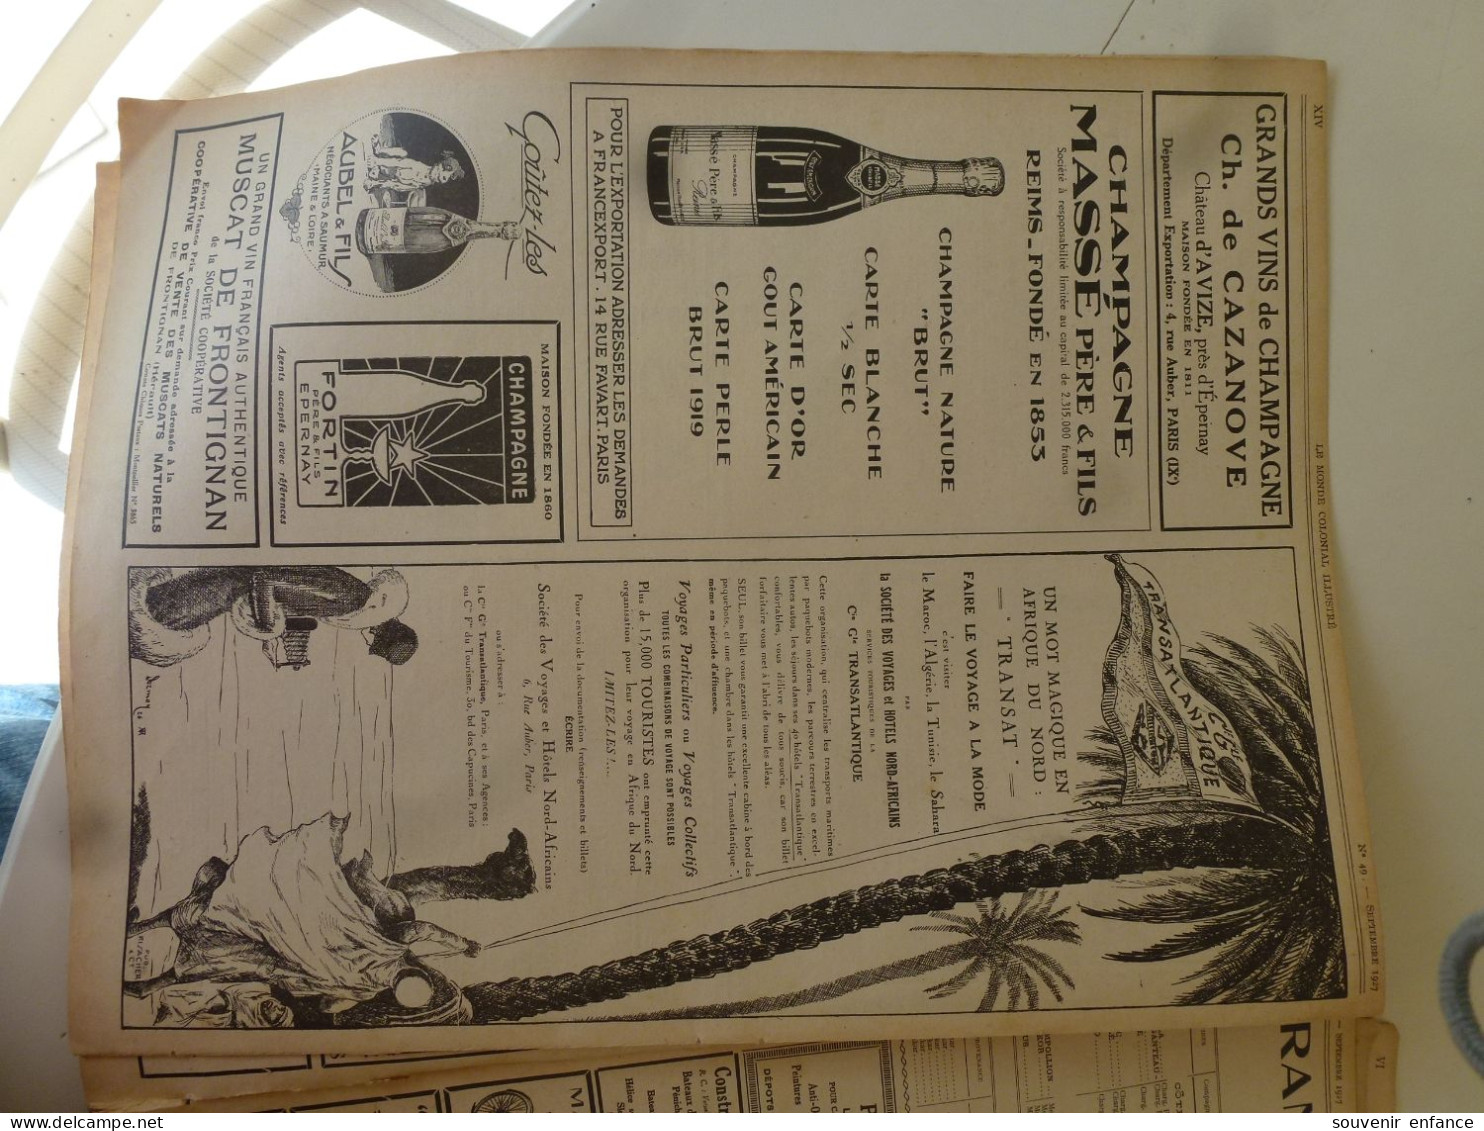 Lot d'Anciennes Publicités Extraites du Monde Colonial Illustré 1927 Burberrys Peter Pan Photo Sport